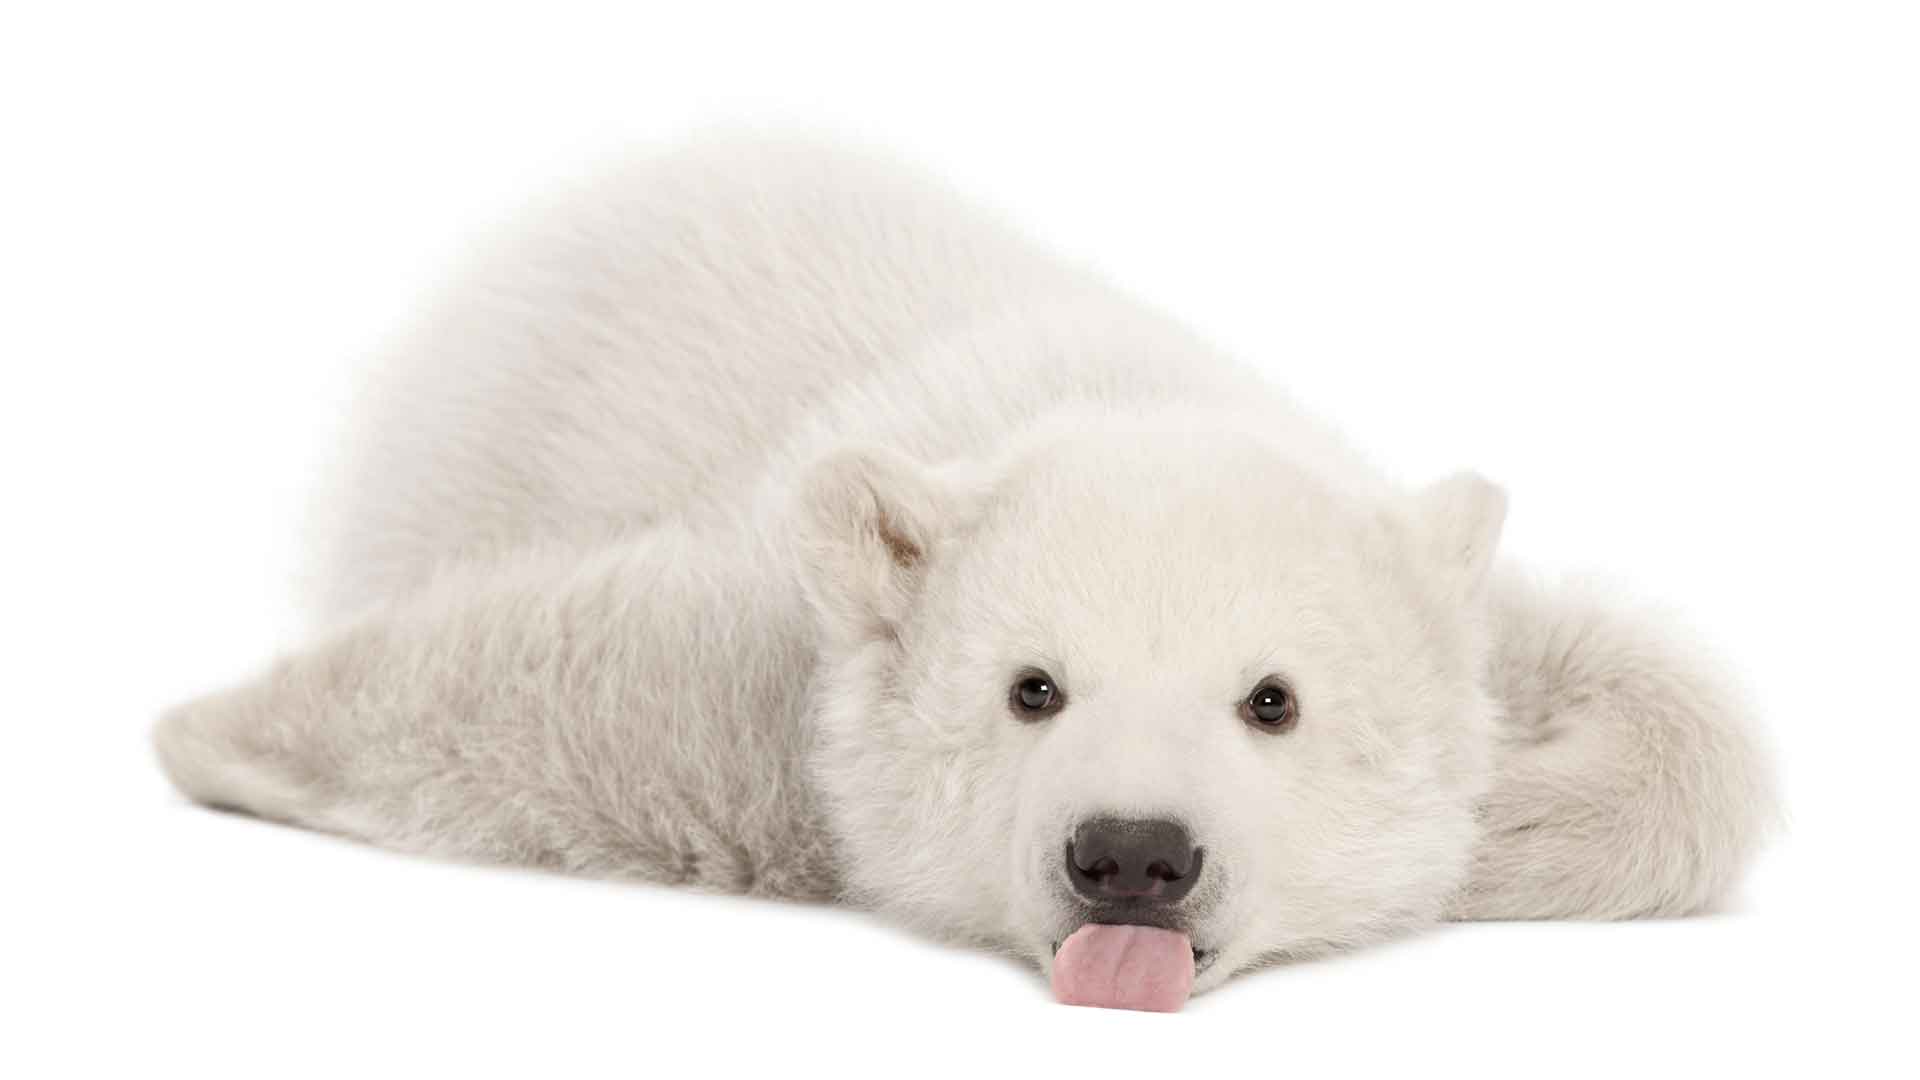 北极熊幼崽